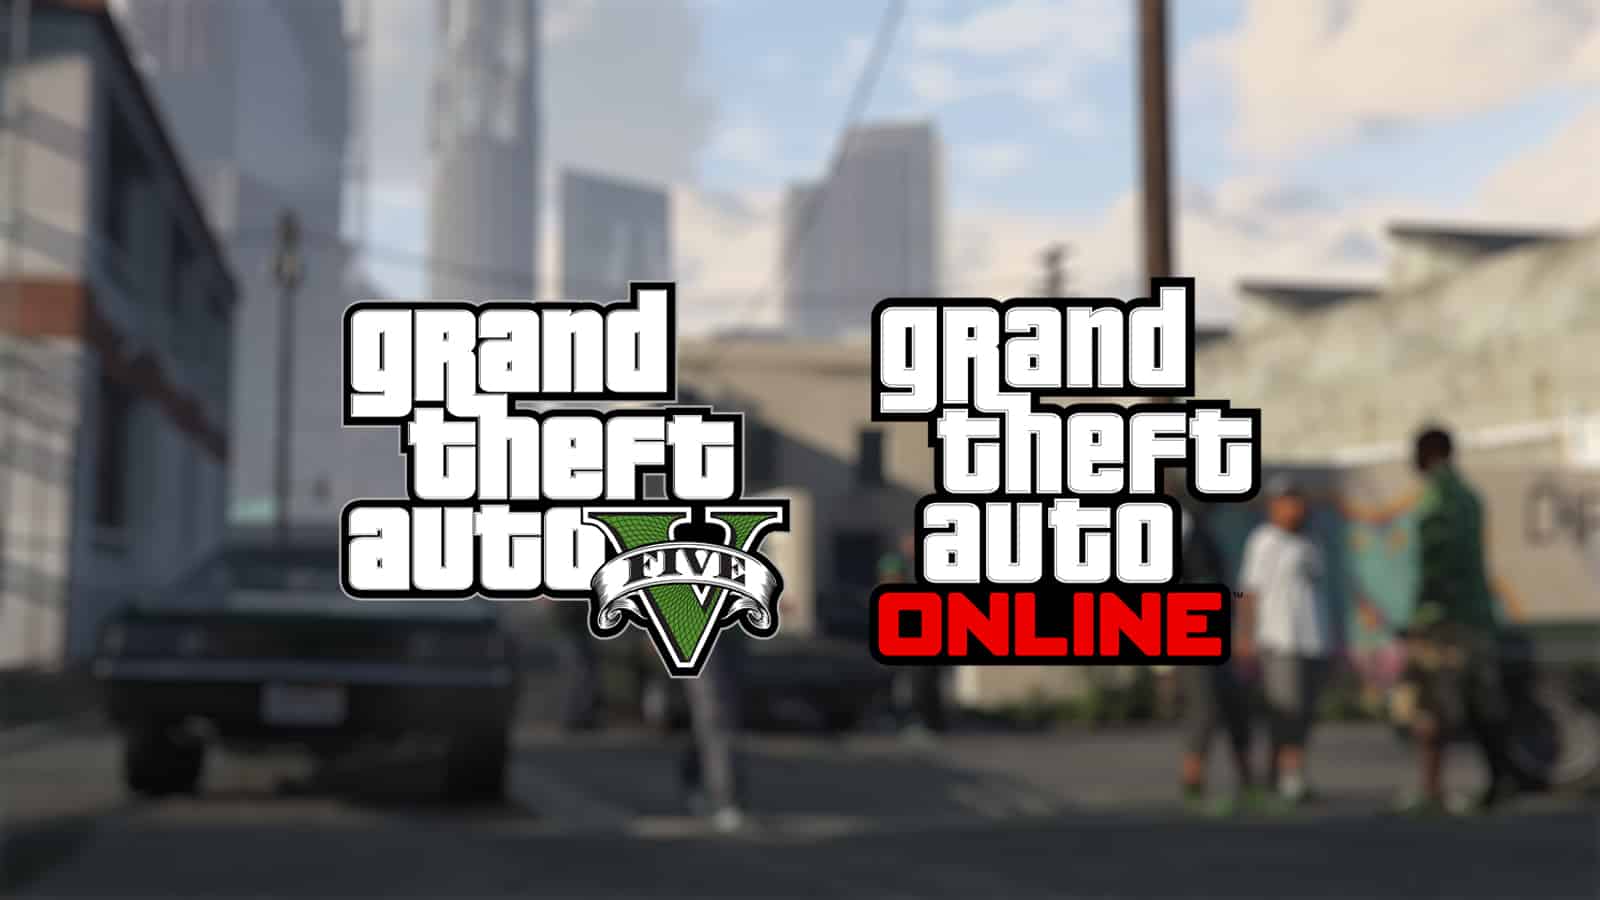 Uma imagem de jogabilidade mostrando os logotipos GTA 5 e GTA Online